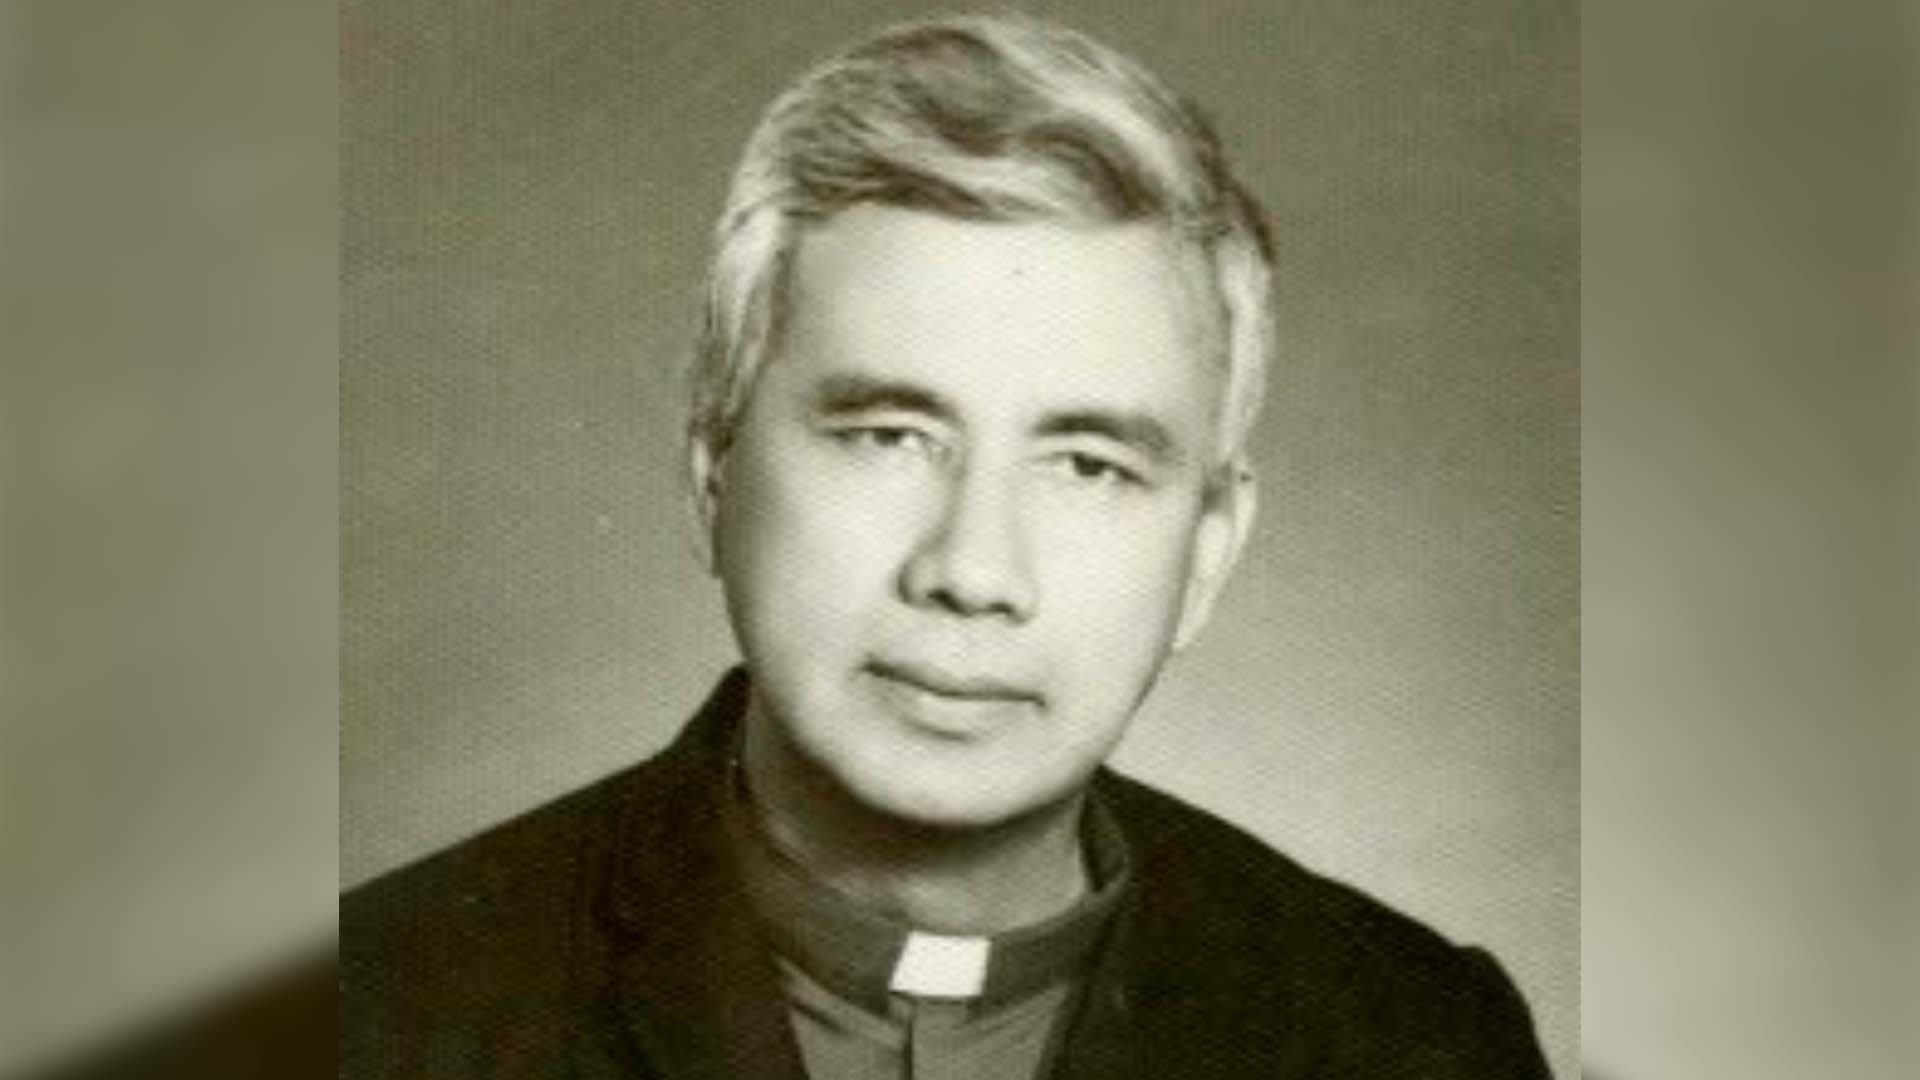 El jesuita Rutilio Grande fue asesinado en una emboscada en El Salvador en el año 1977 junto a dos laicos. Los 3 mártires, y otro sacerdote asesinado en 1980, fueron beatificados el 22 de enero en el país centroamericano
